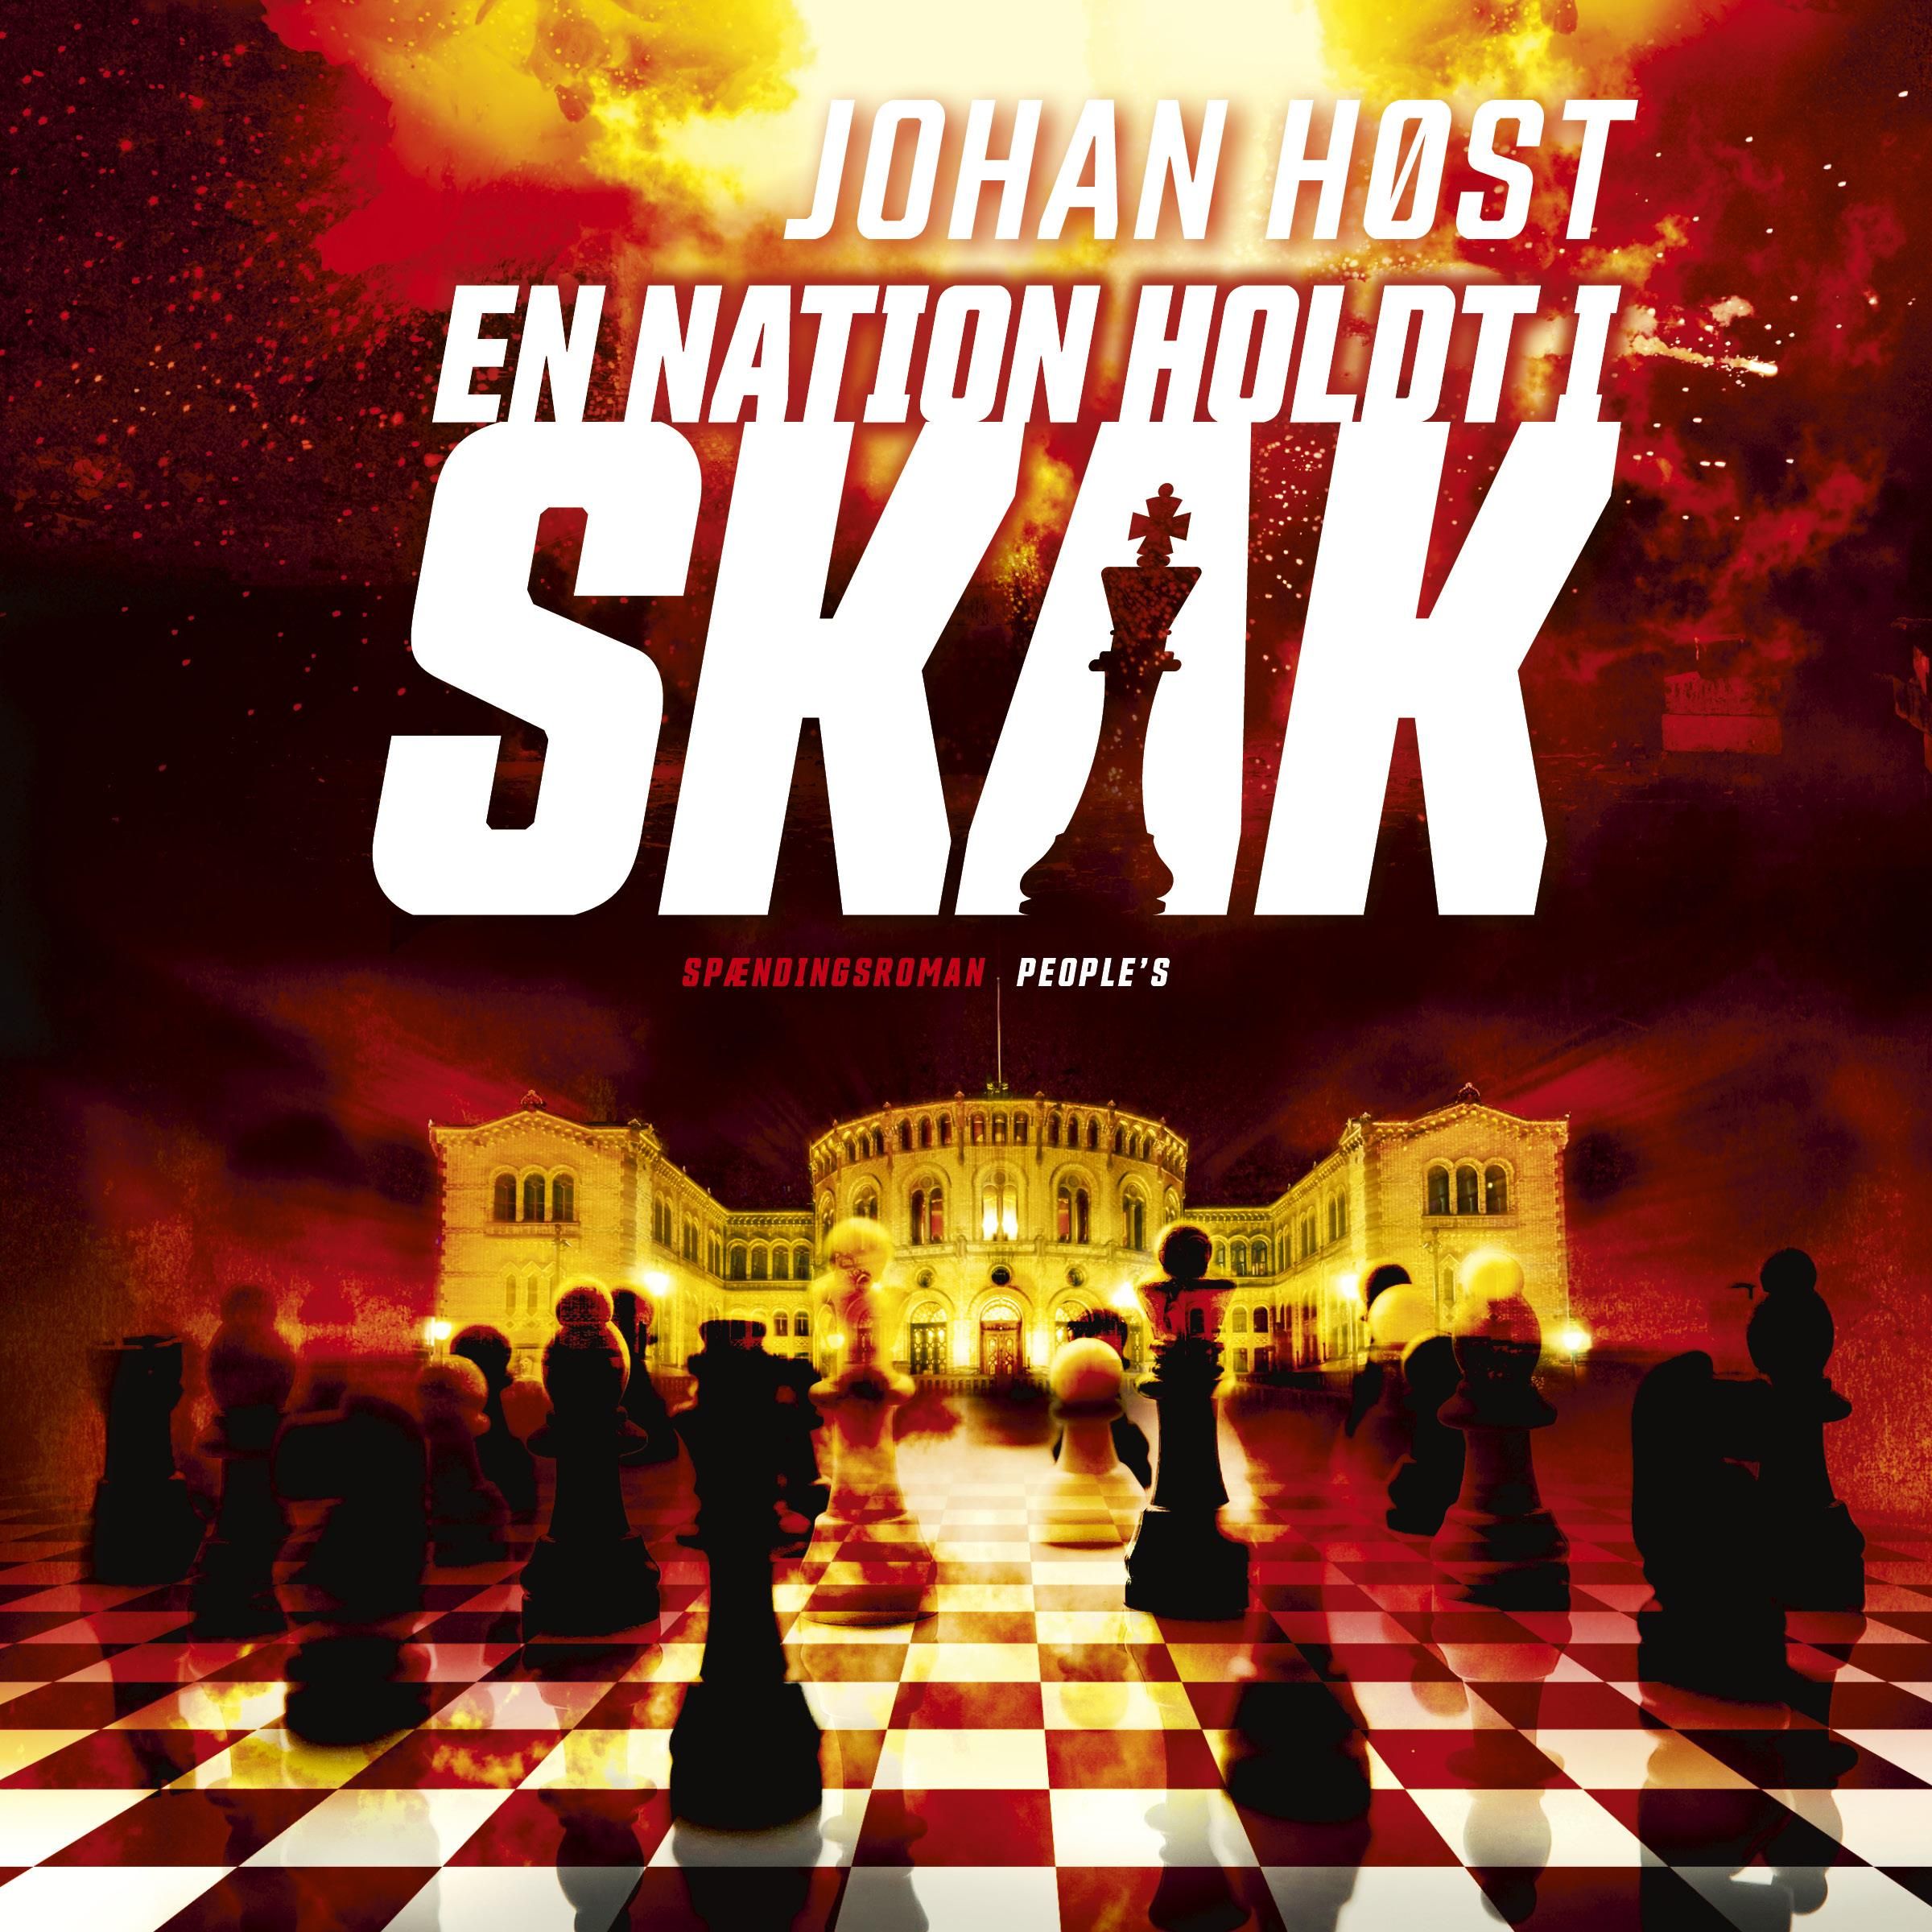 En nation holdt i skak, ljudbok av Johan Høst